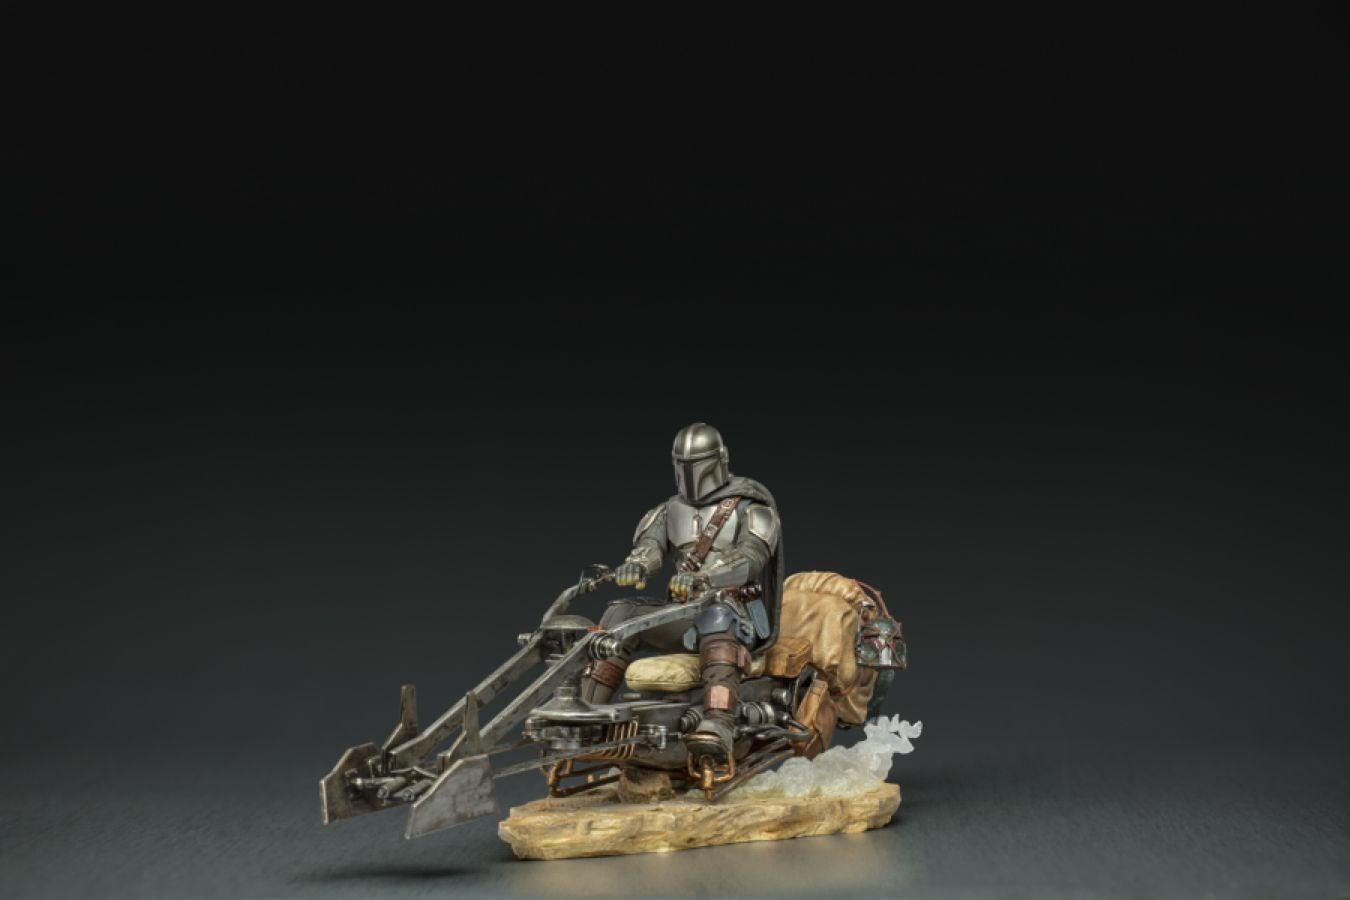 IRO28402 Star Wars: The Mandalorian - Mandalorian on Speederbike Deluxe 1:10 Scale Statue - Iron Studios - Titan Pop Culture